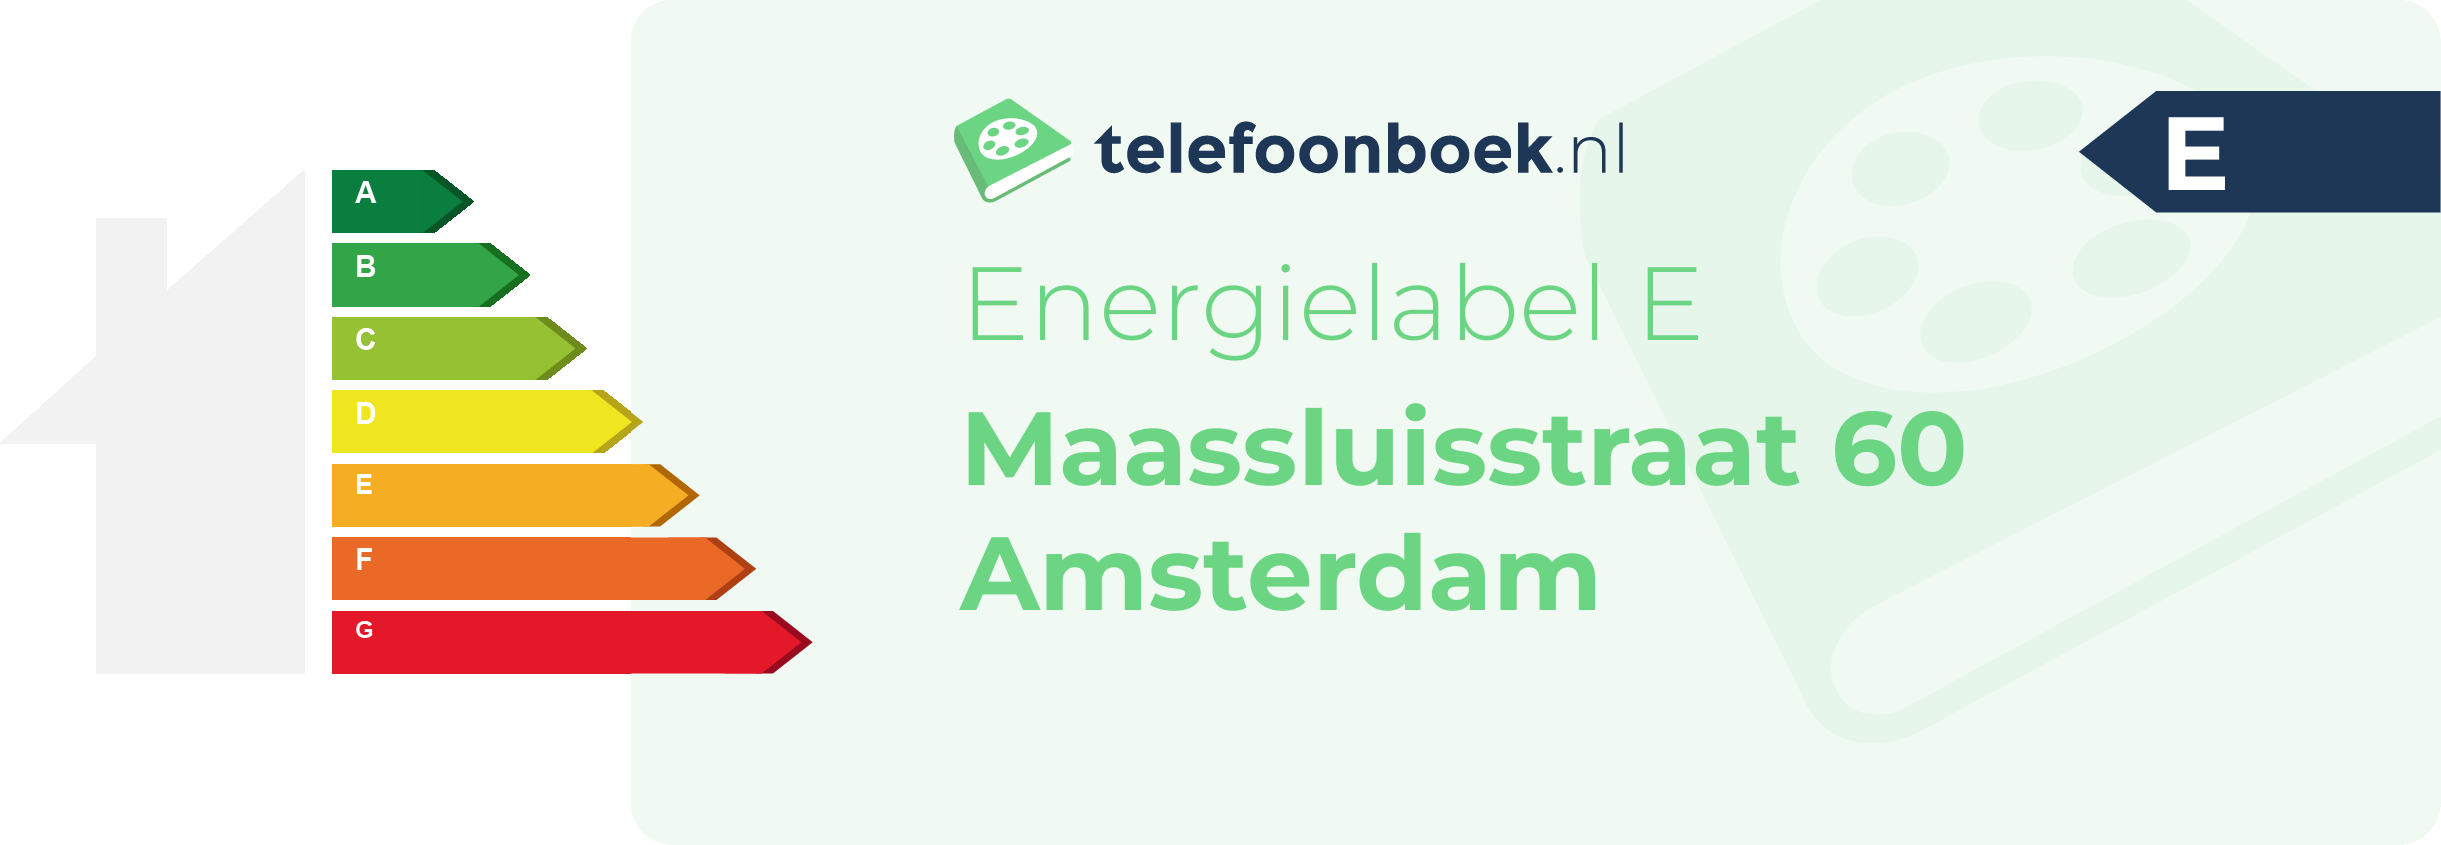 Energielabel Maassluisstraat 60 Amsterdam